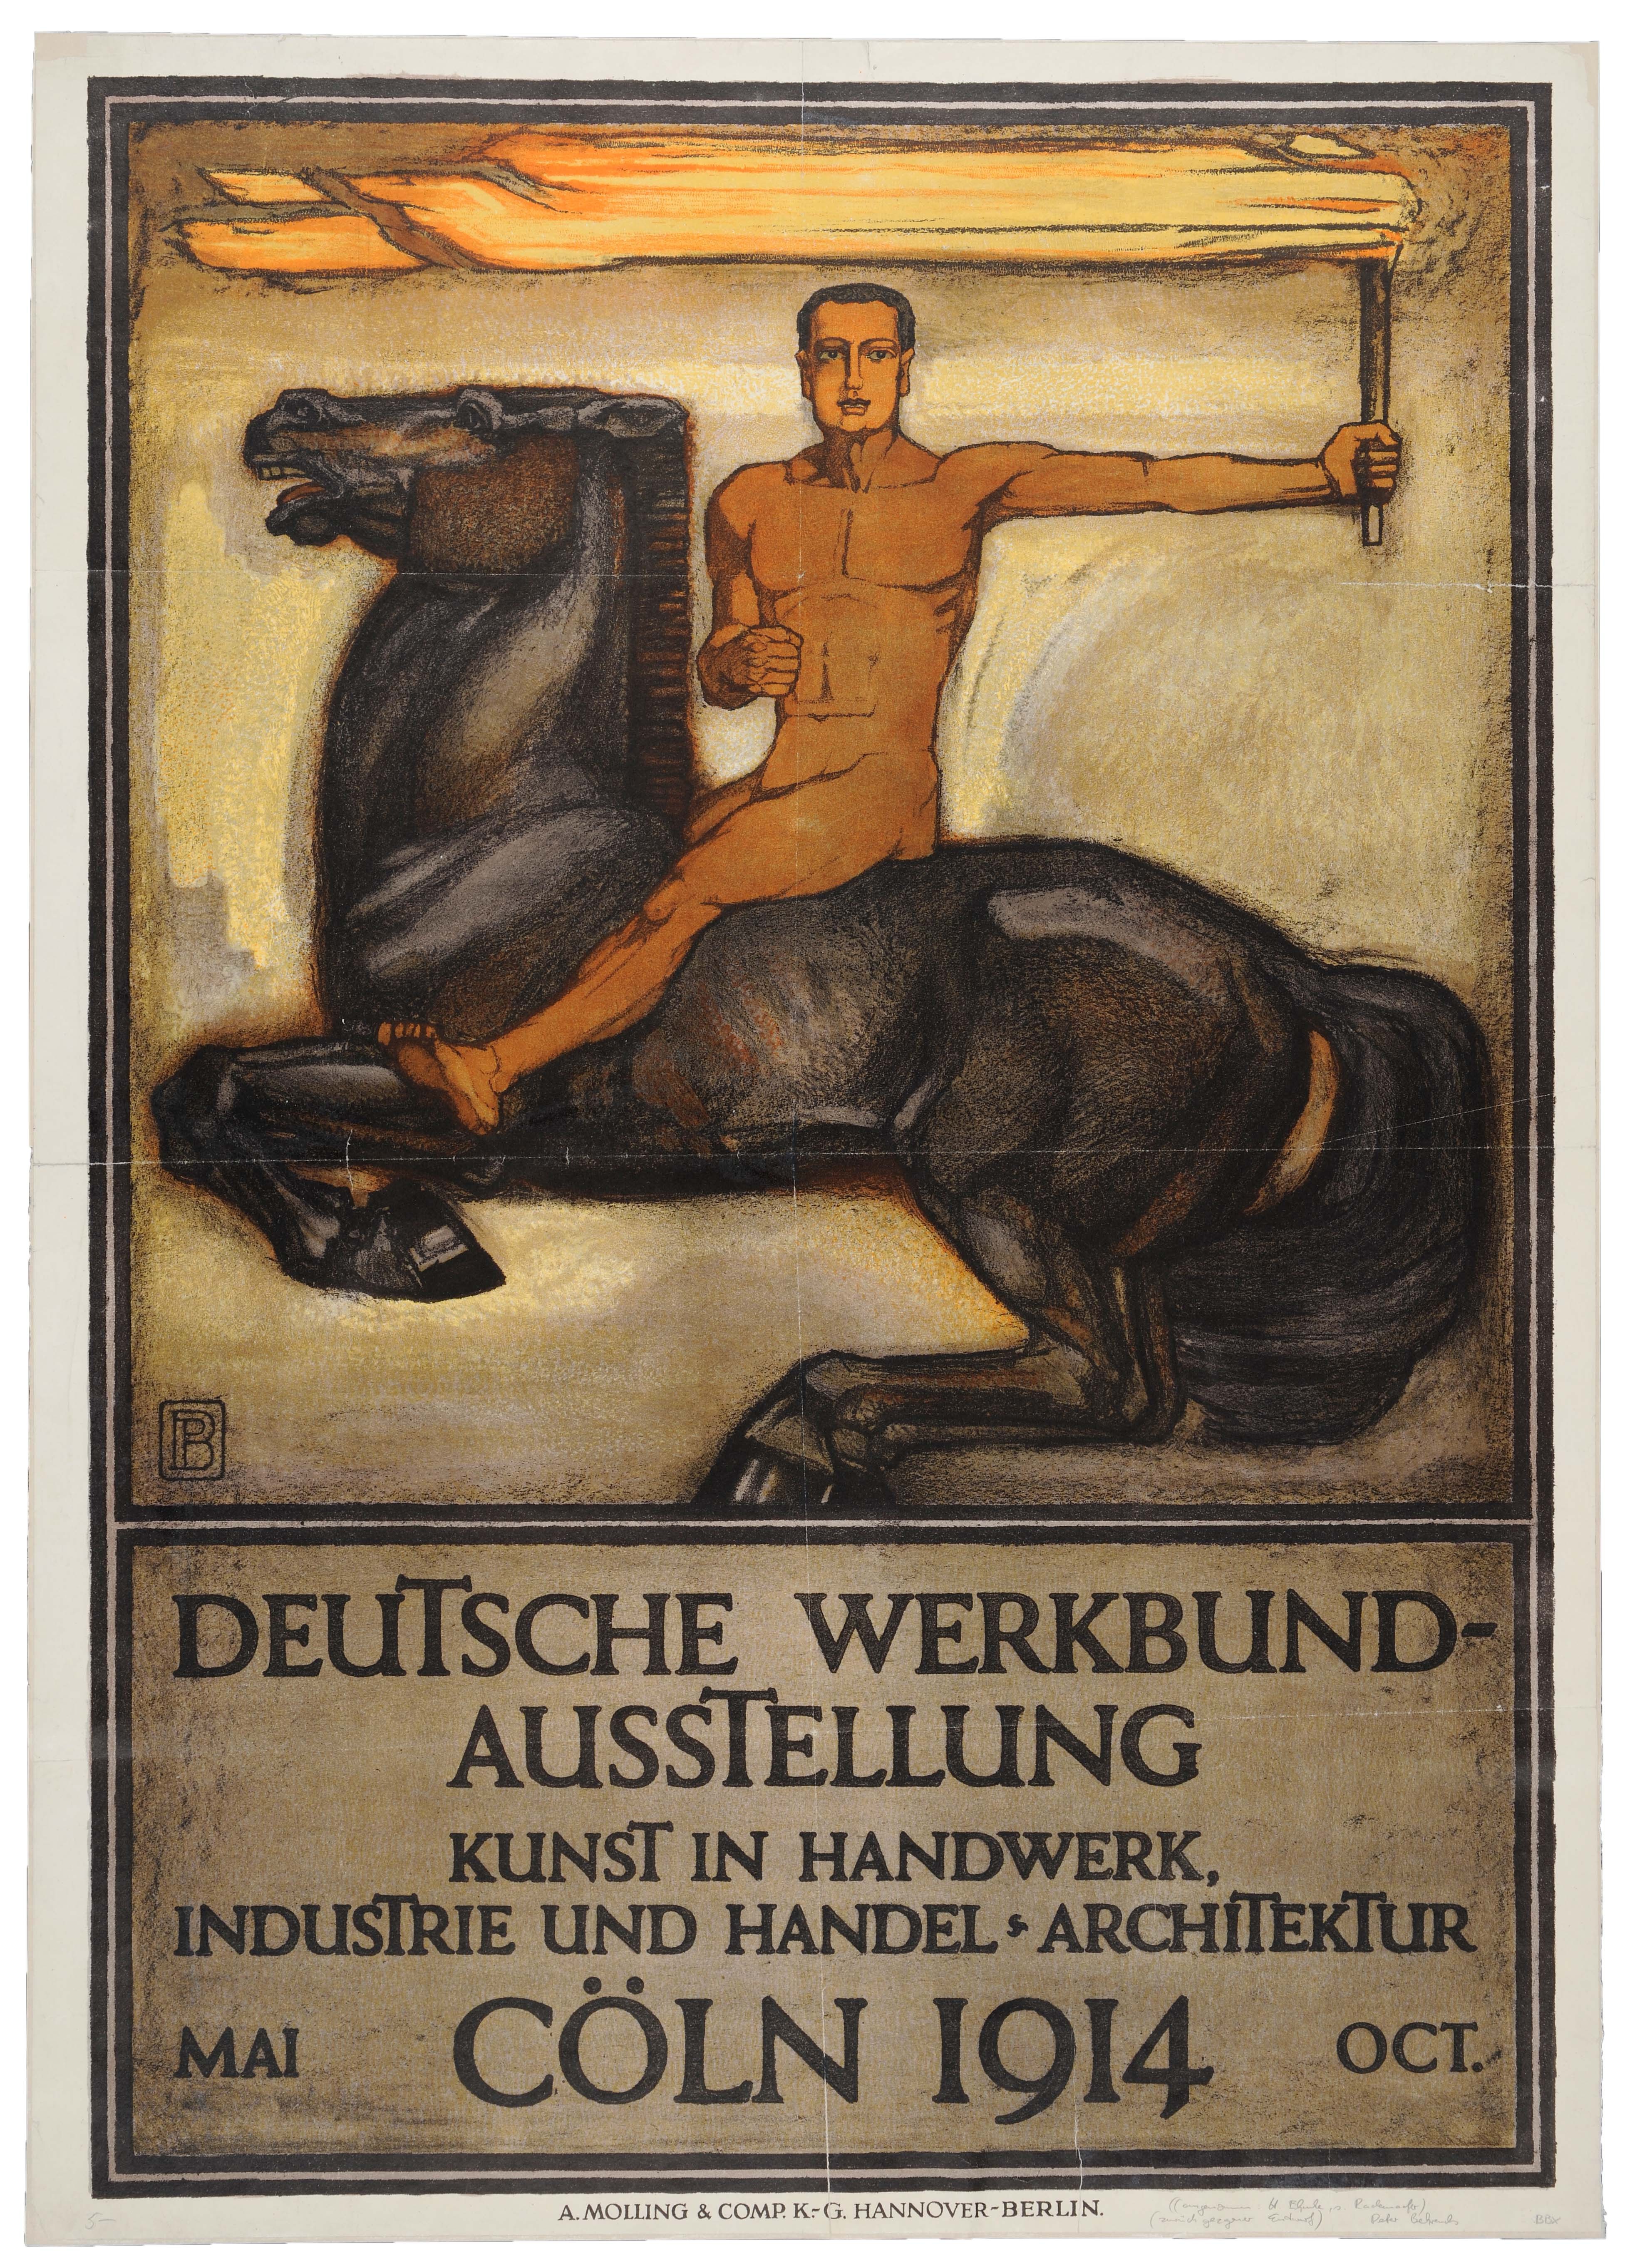 Das Werkbund-Plakat zeigt einen nackten Reiter mit brennender Fackel auf einem schwarzen Pferd 